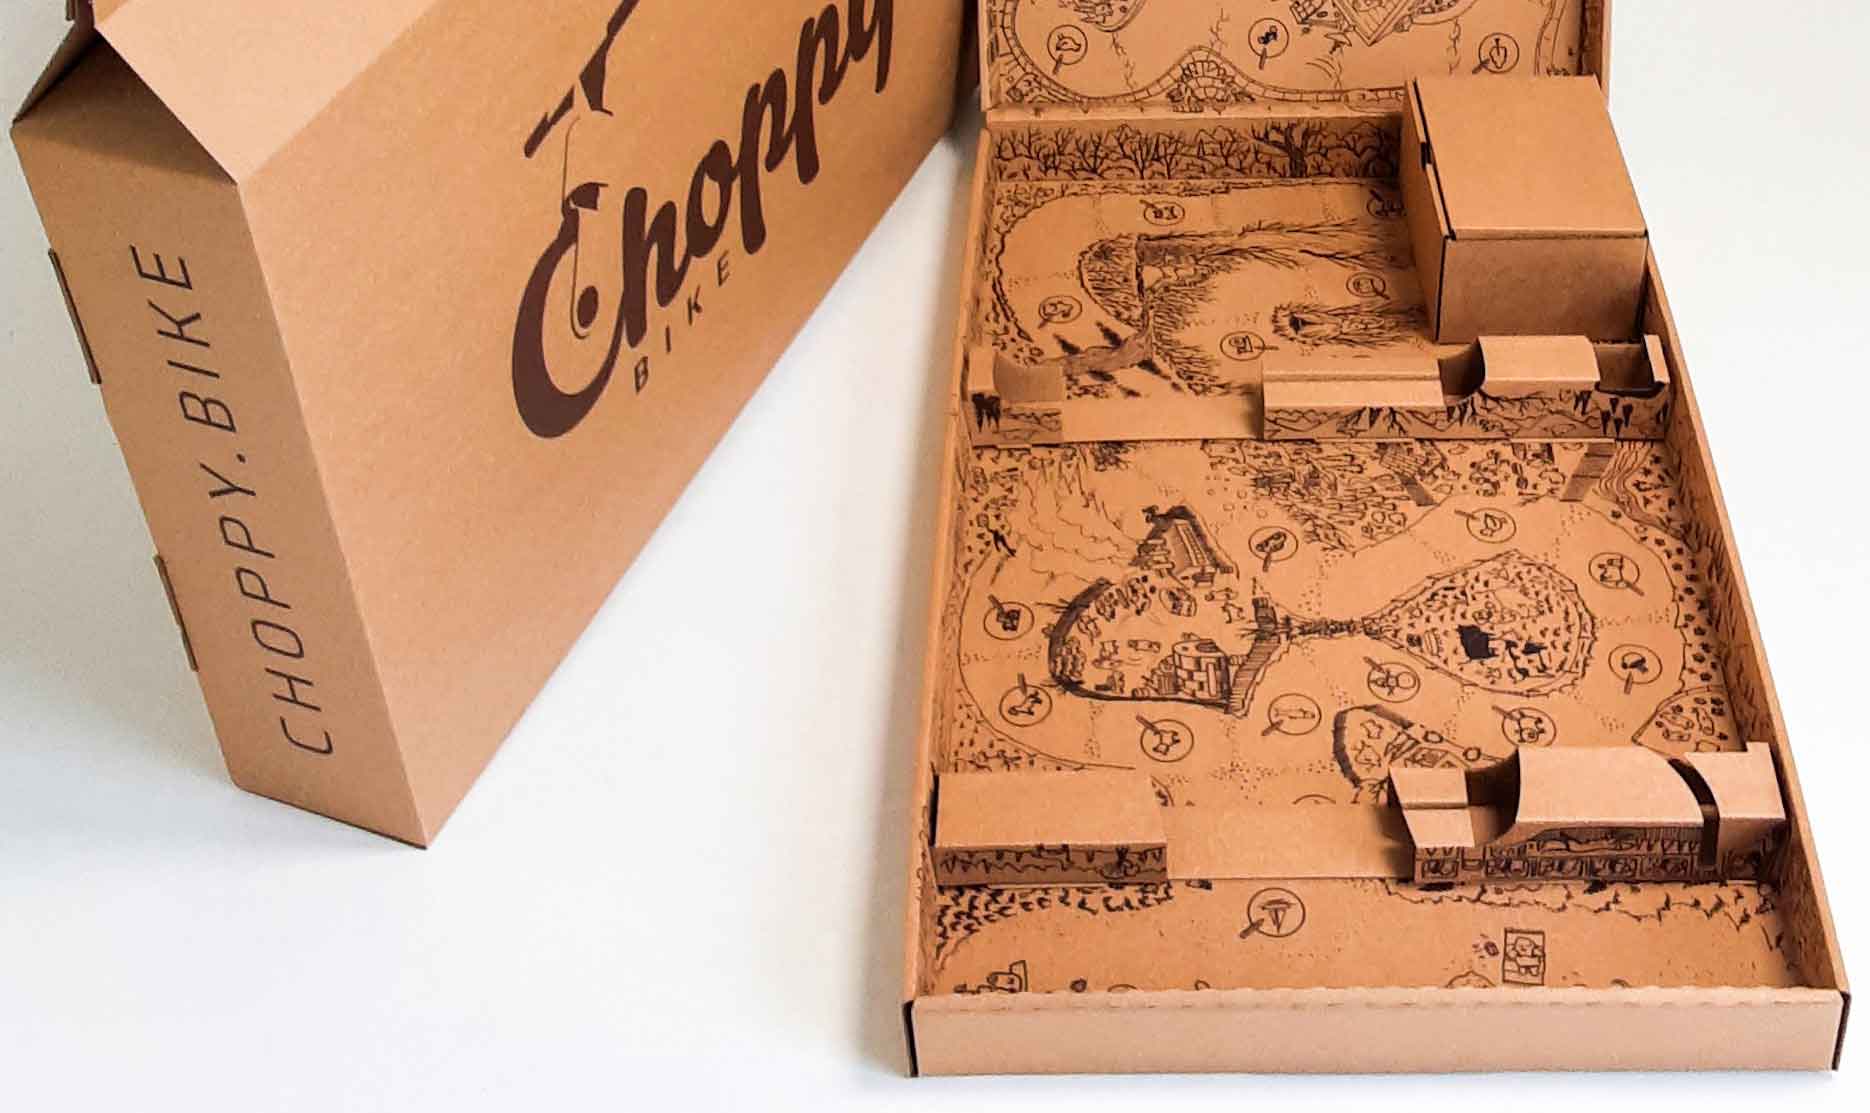 Choppy Bike packaging game